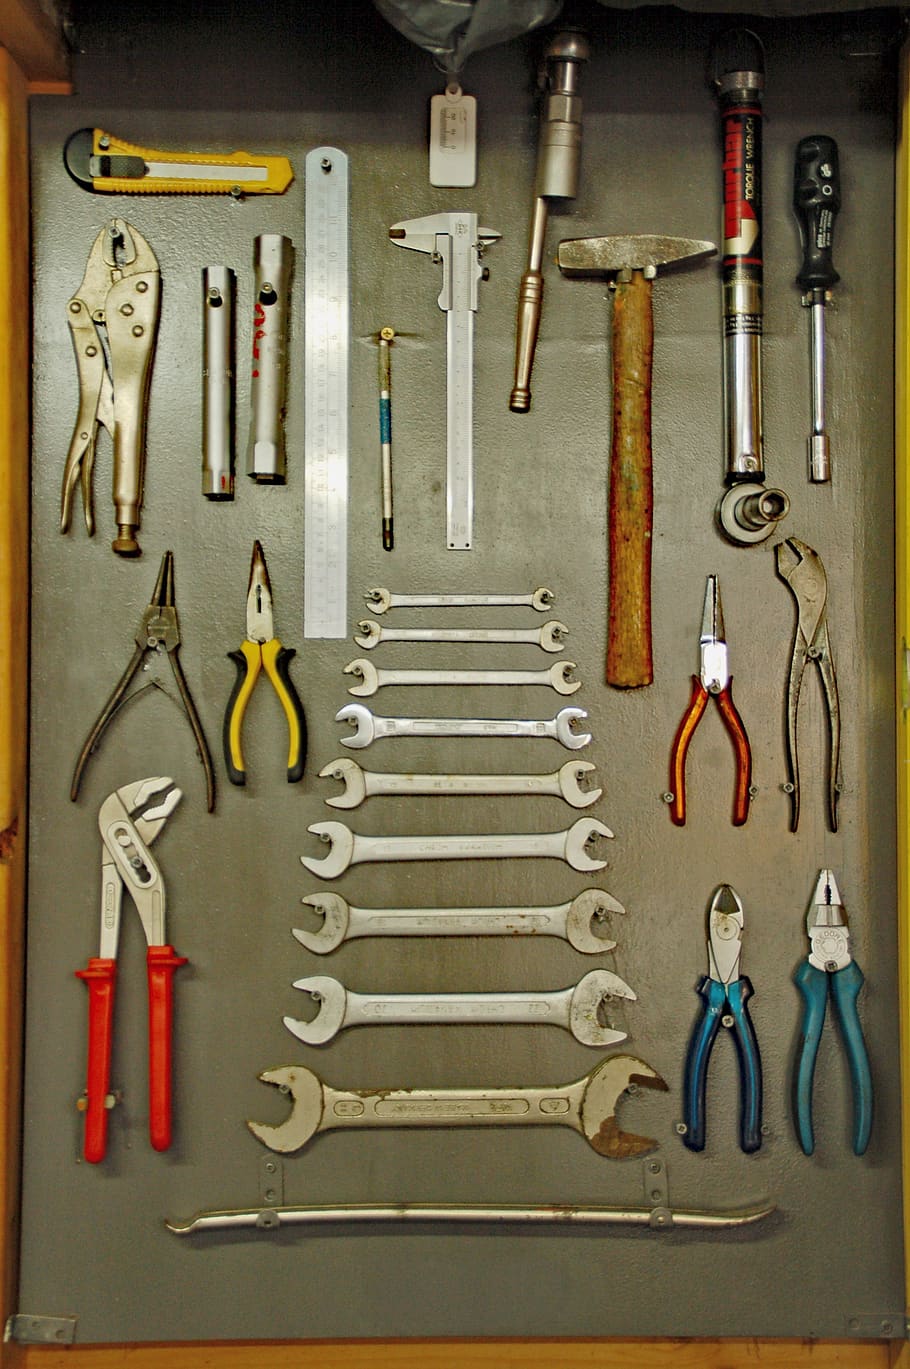 herramientas, llaves, espiga, martillo, colgar, ordenado, herramienta, herramienta de mano, herramienta de trabajo, metal